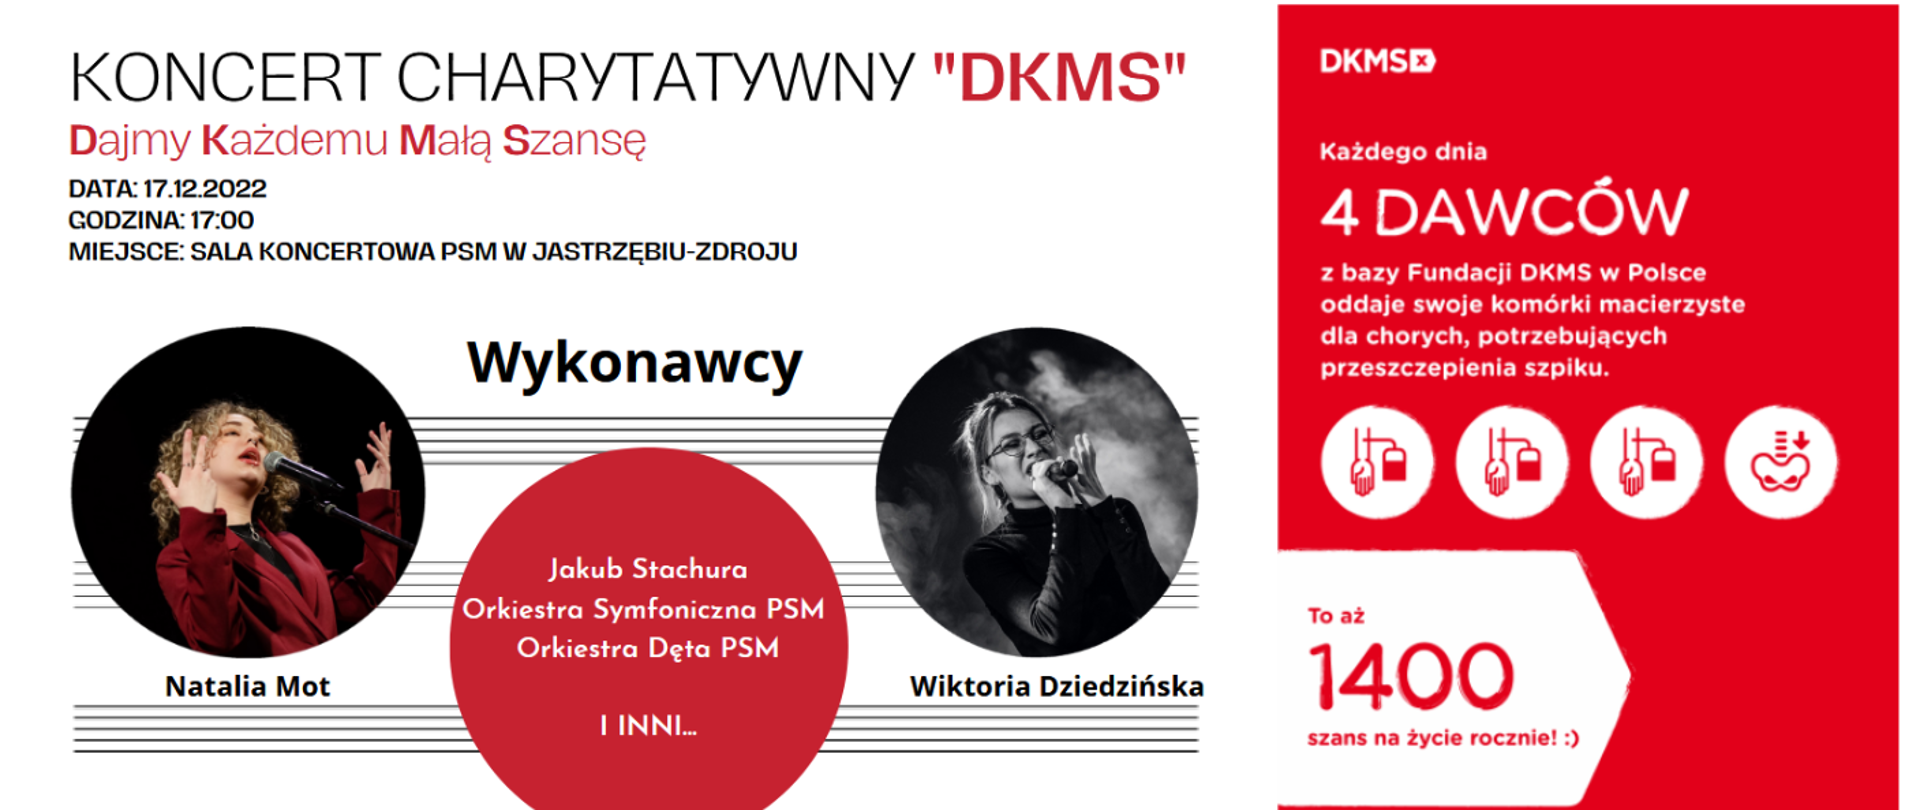 Zaproszenie na koncert charytatywny DKMS 17.12.2022 17:00
Obrazek przedstawia białe tło na którym w okręgach znajdują się informacje o wykonawcach oraz ich zdjęcia.